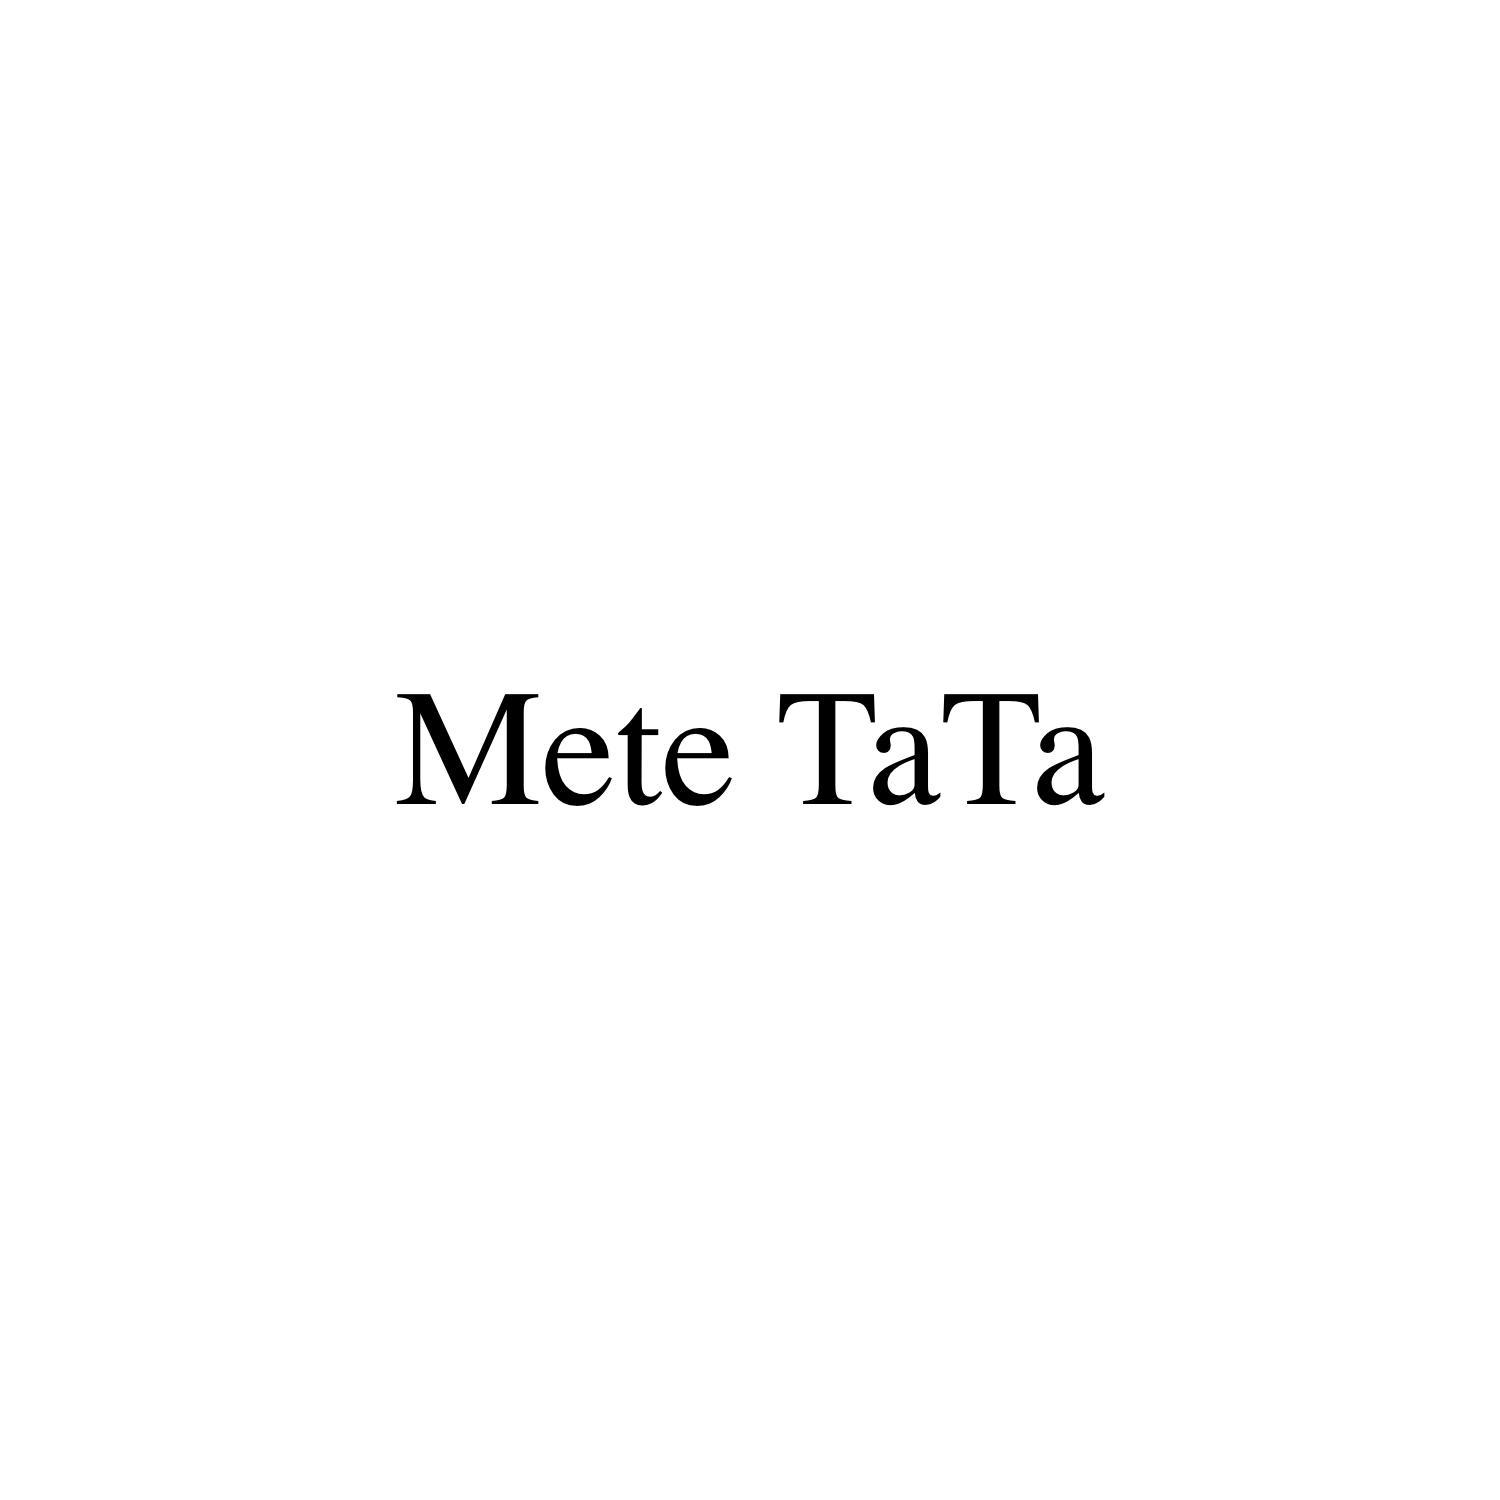 METE TATA